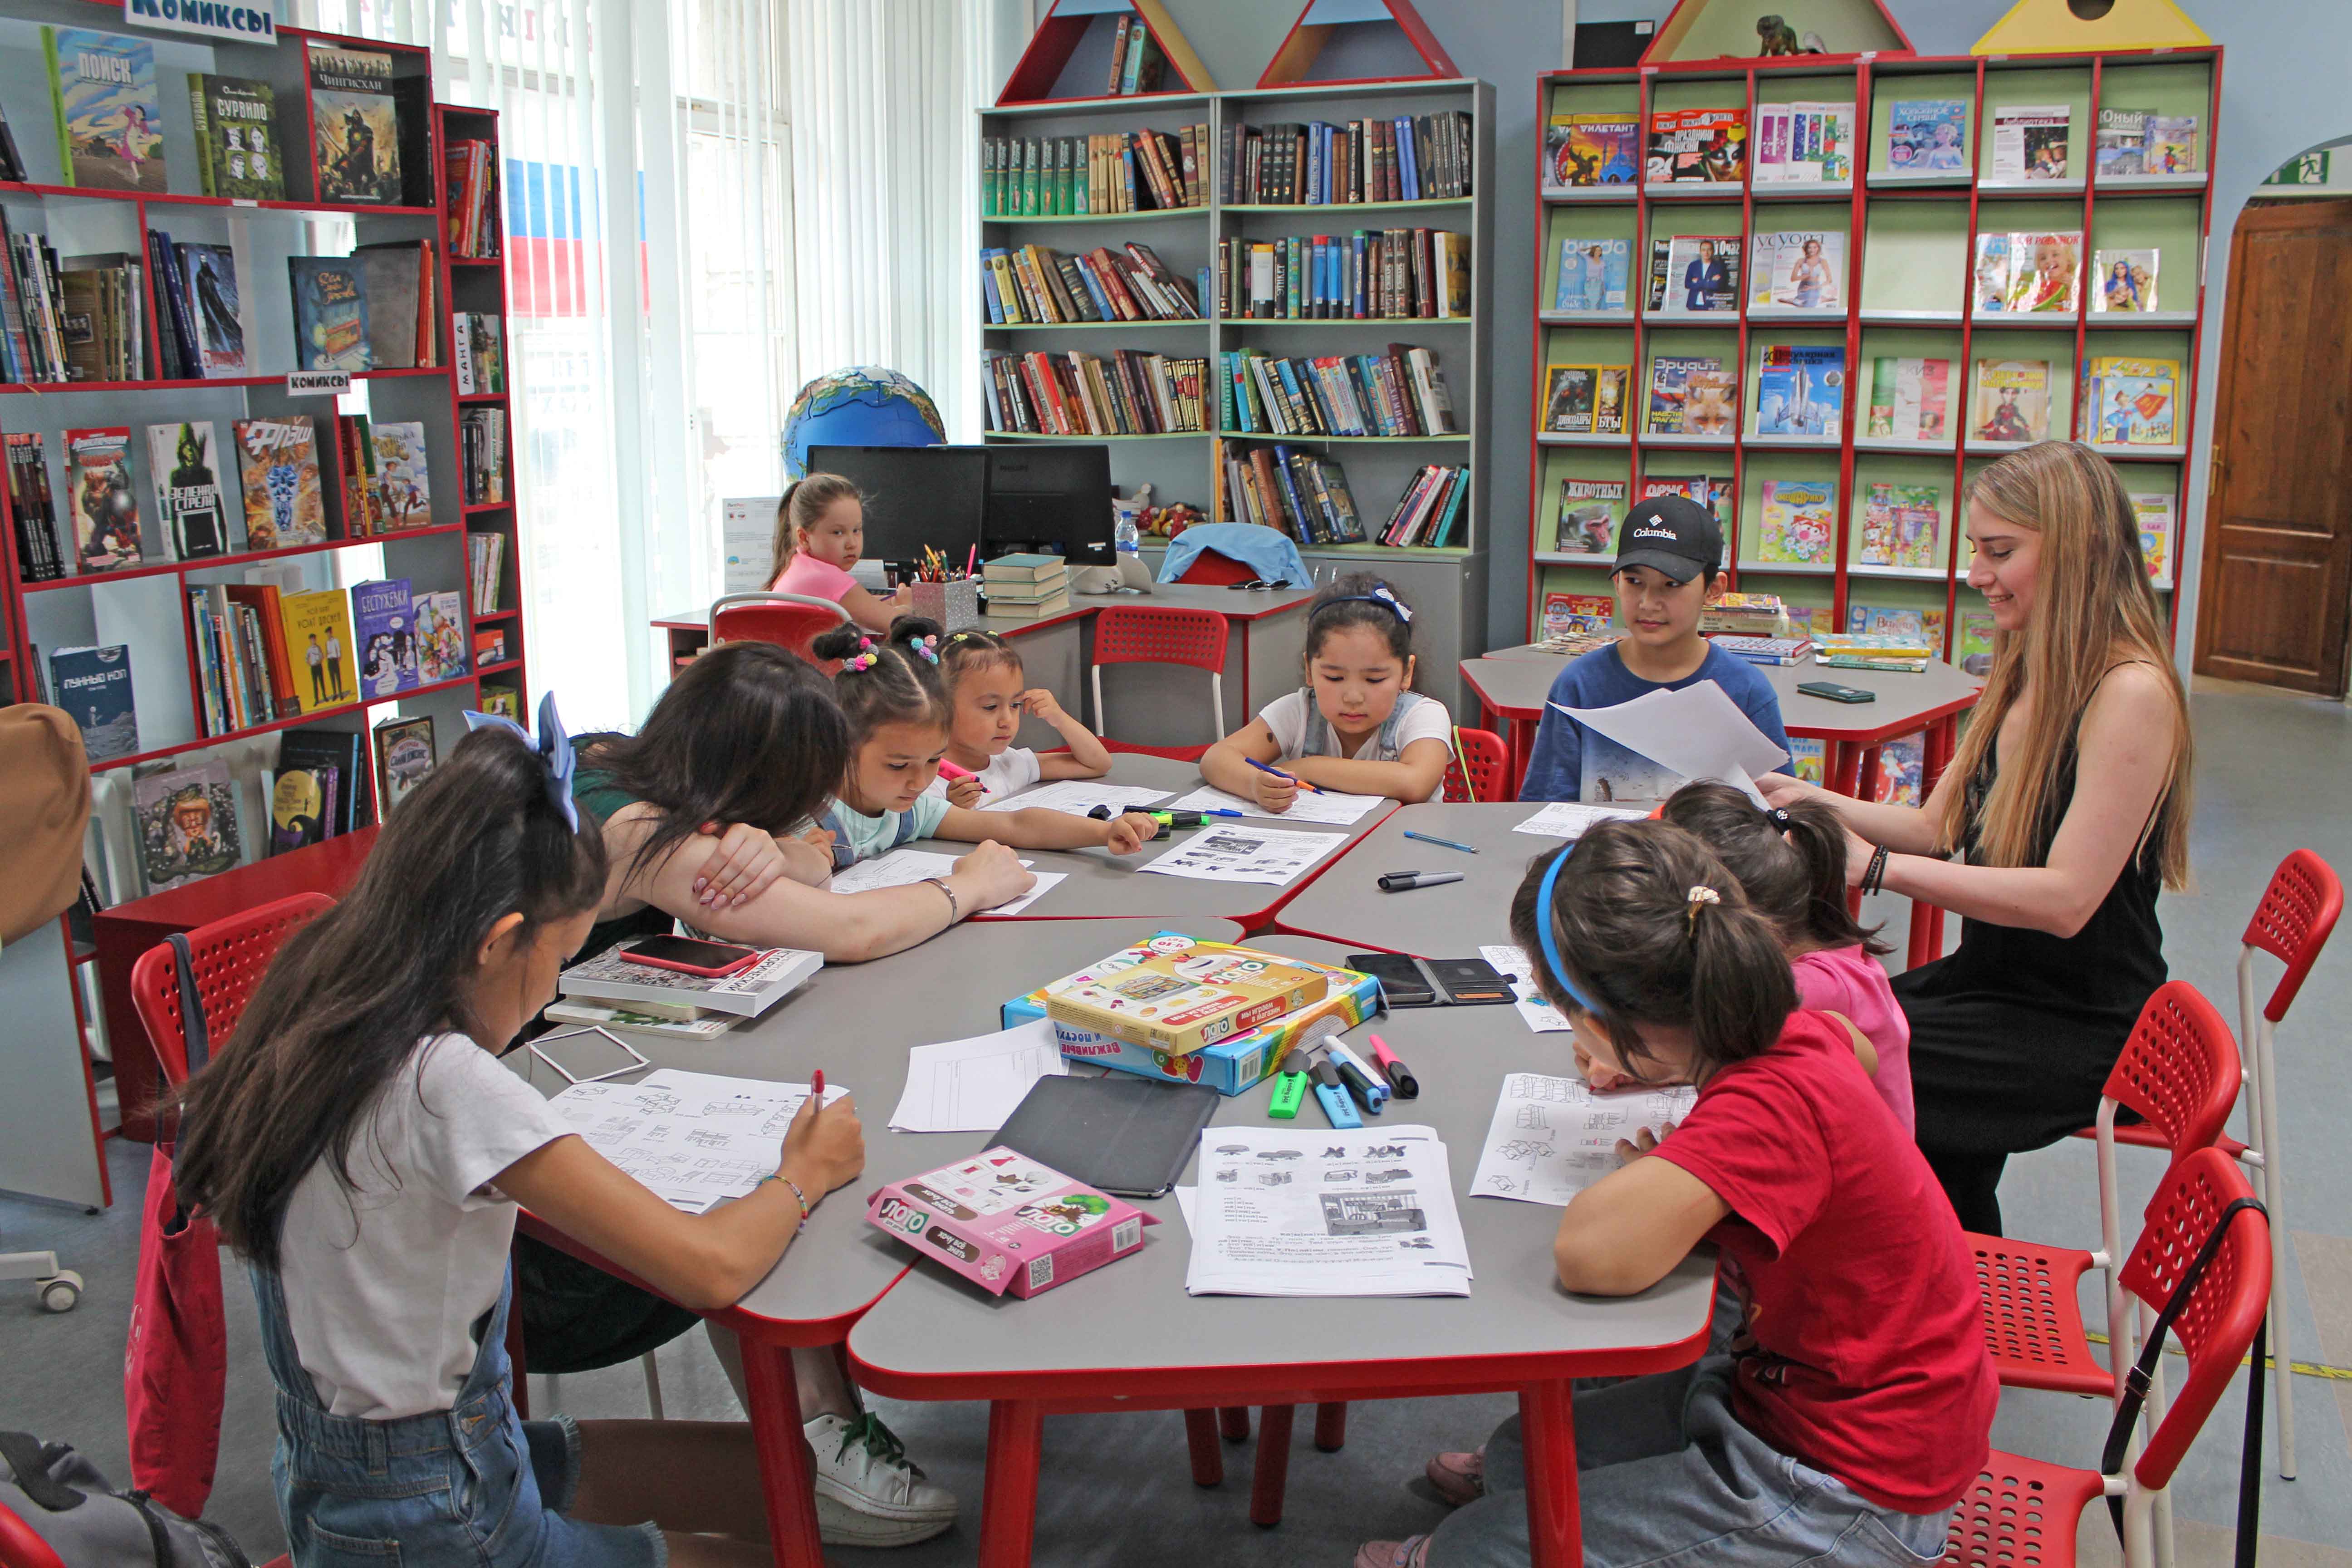 В Центральной районной детской библиотеке (Большой пр. П.С., д.65) проходят занятия, на которых волонтеры этой организации и библиотекари общаются с детьми, играют, смотрят обучающие видеоролики, читают и разбирают правила русского языка.